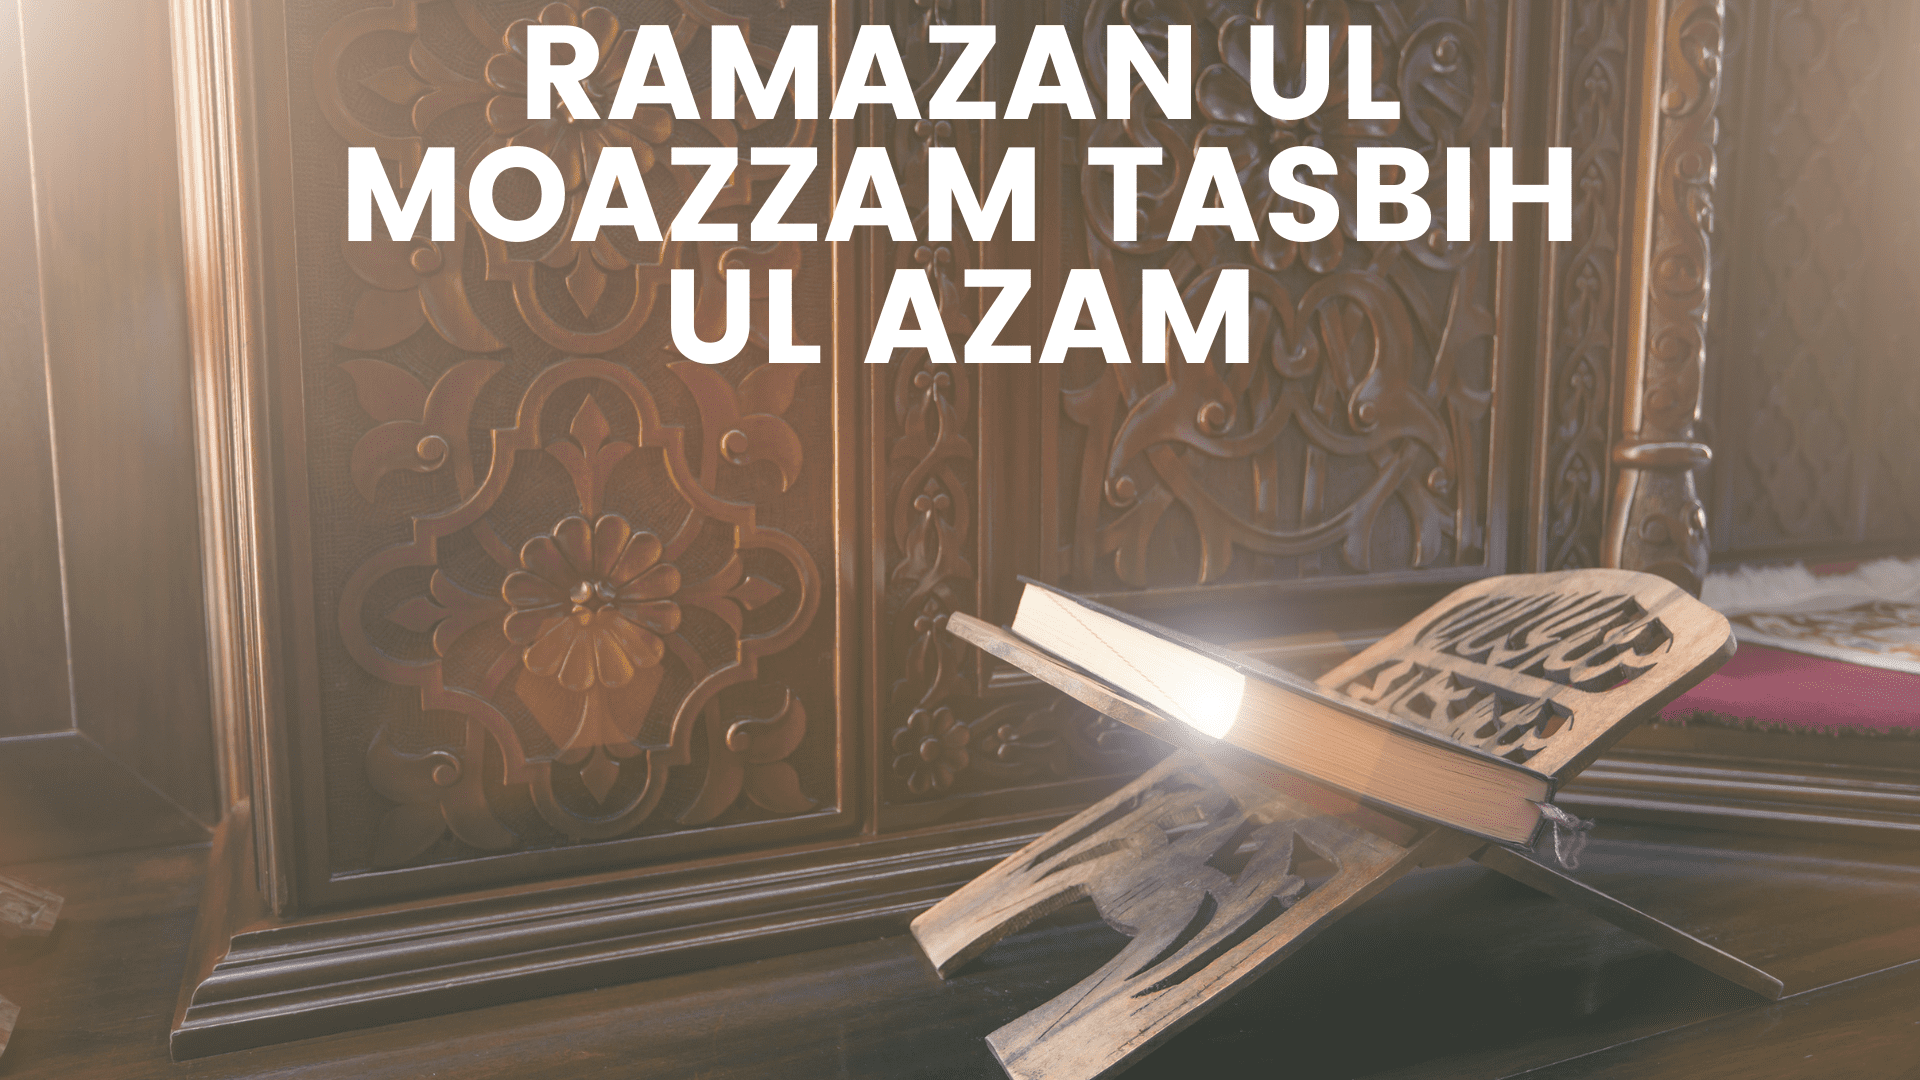 Ramazan ul Moazzam Tasbih ul Azam